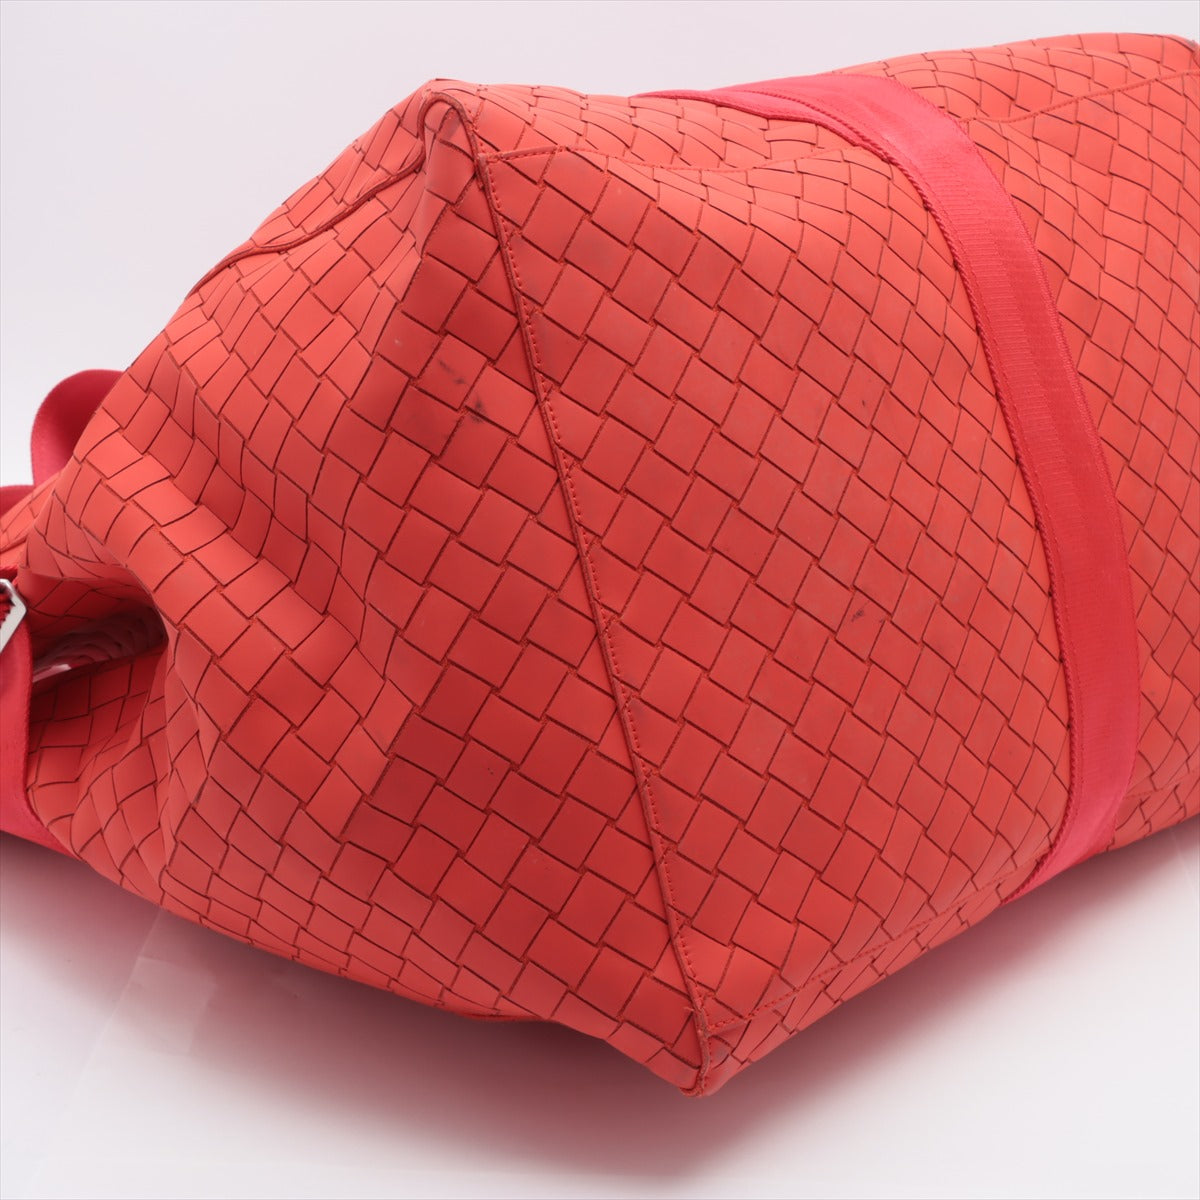 Bottega Veneta Intrecciato Nylon & leather Tote bag Red with pouch